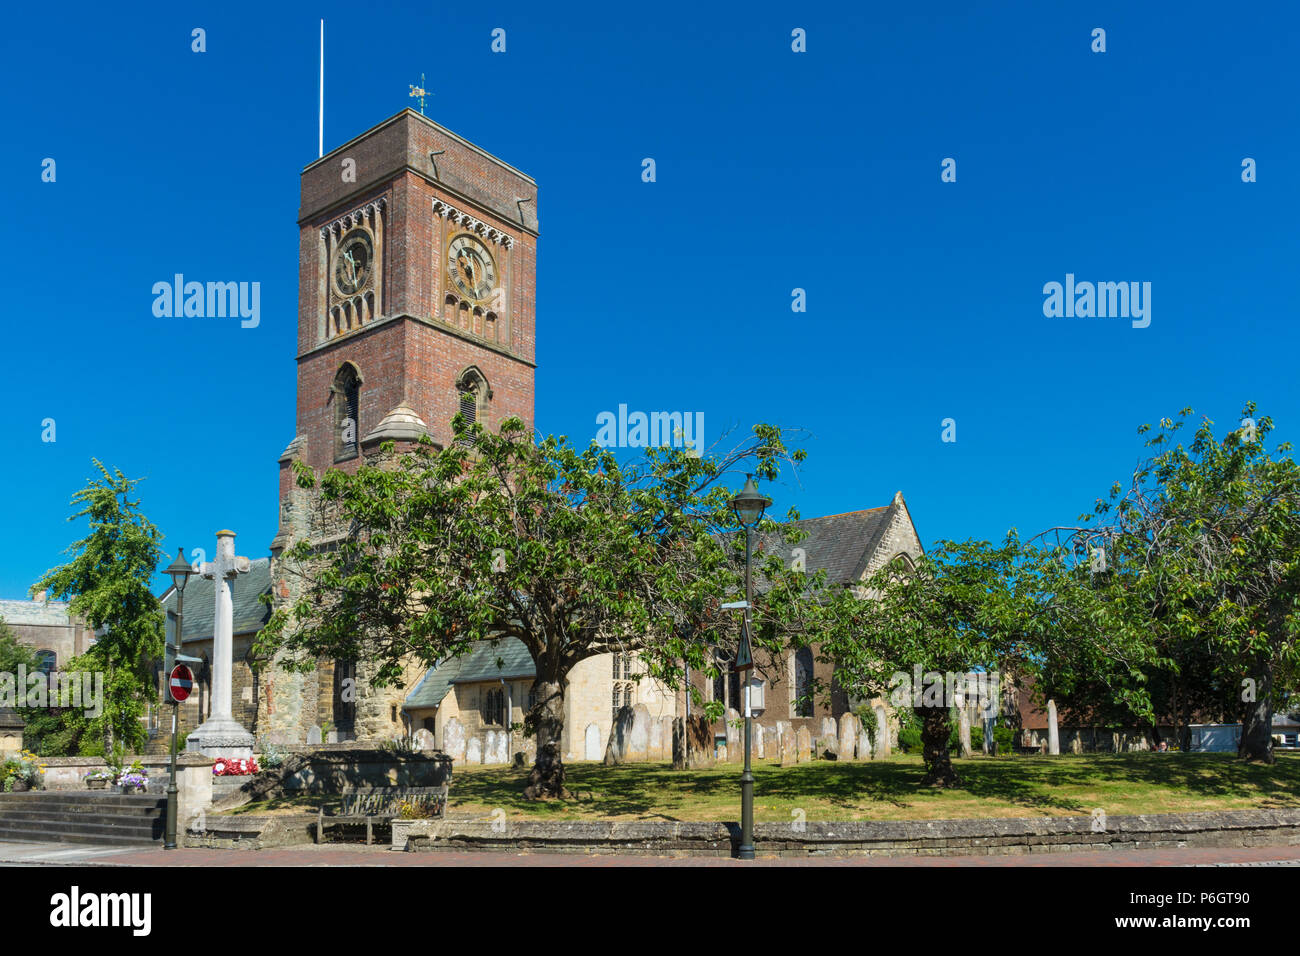 L'église de Sainte Marie dans la pittoresque ville de marché de Petworth, West Sussex, UK Banque D'Images